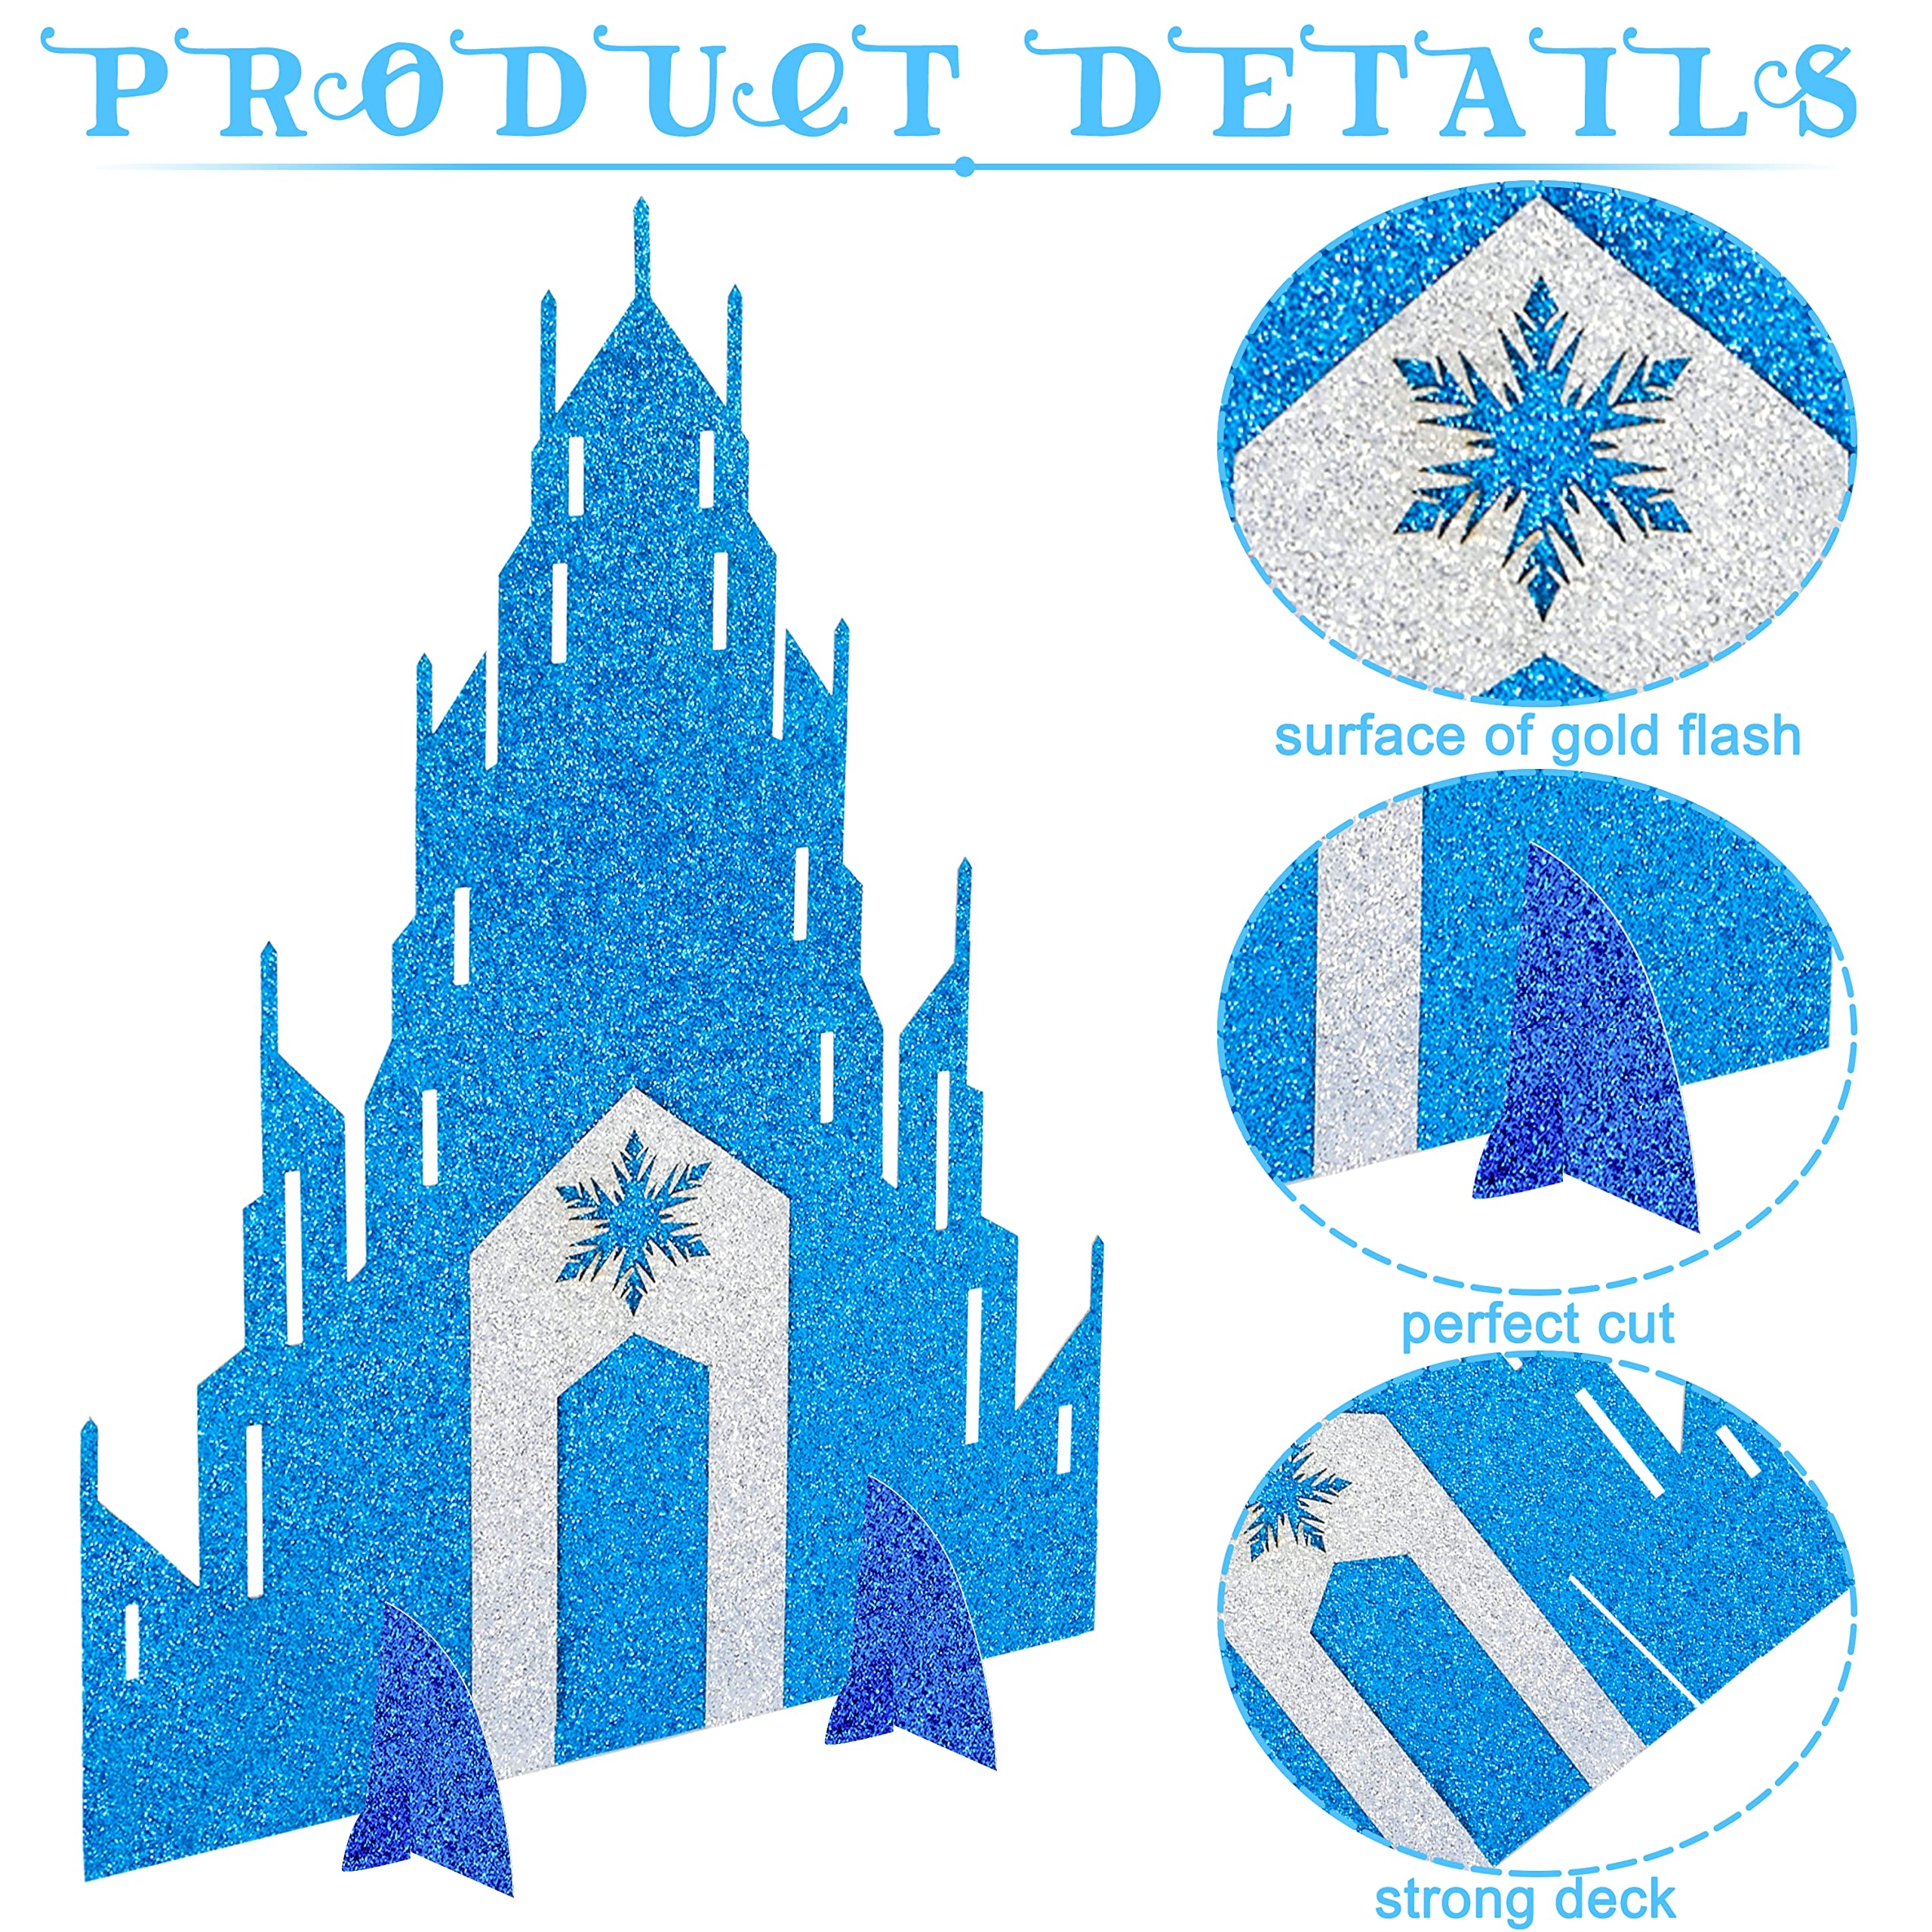 Printable Frozen Castle Template